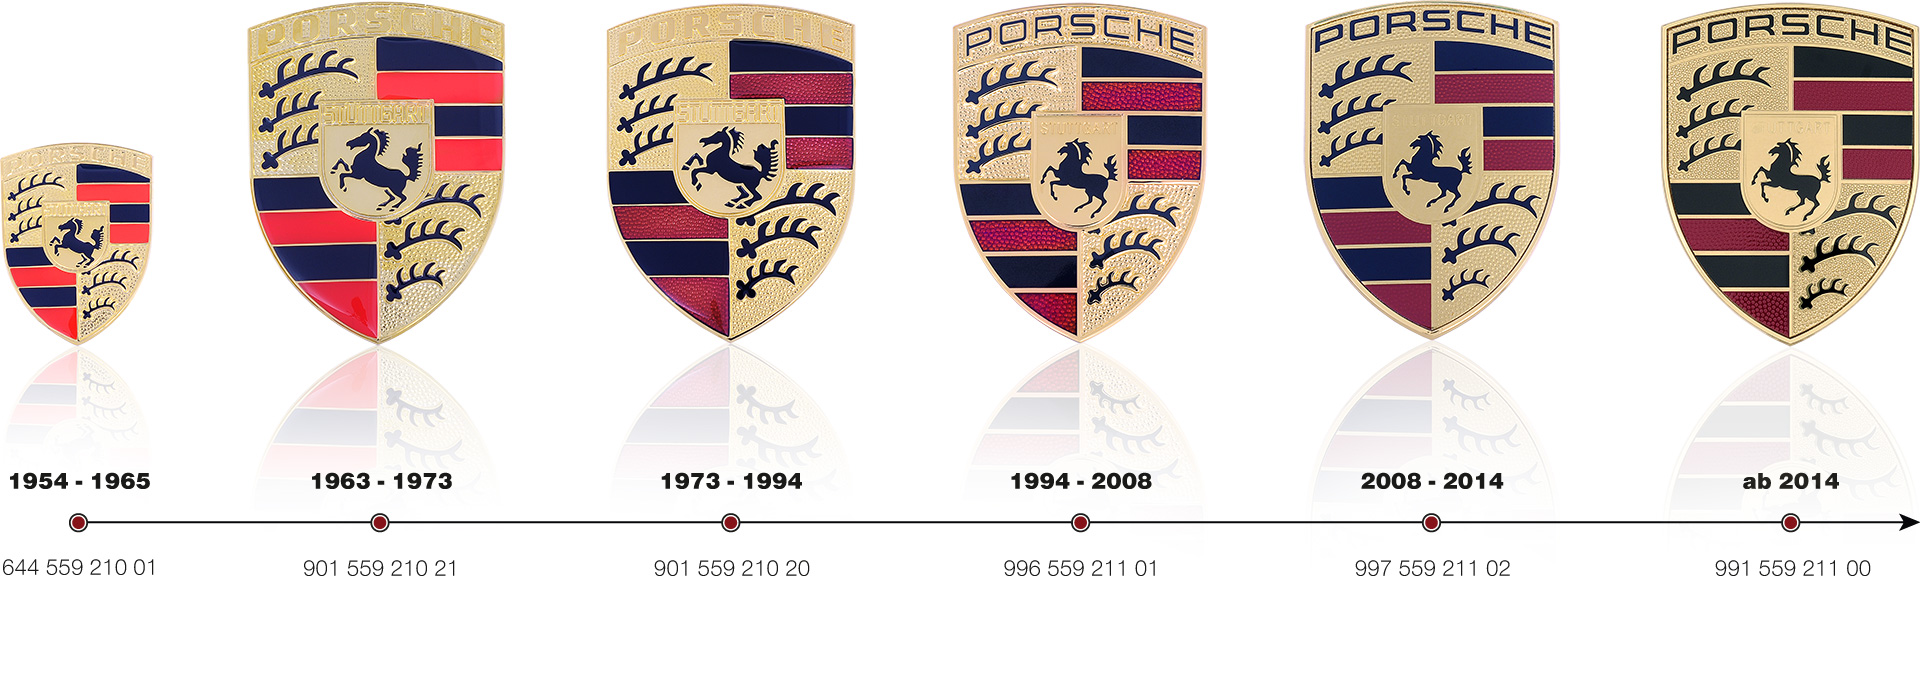 Die Evolution des Porsche Wappens